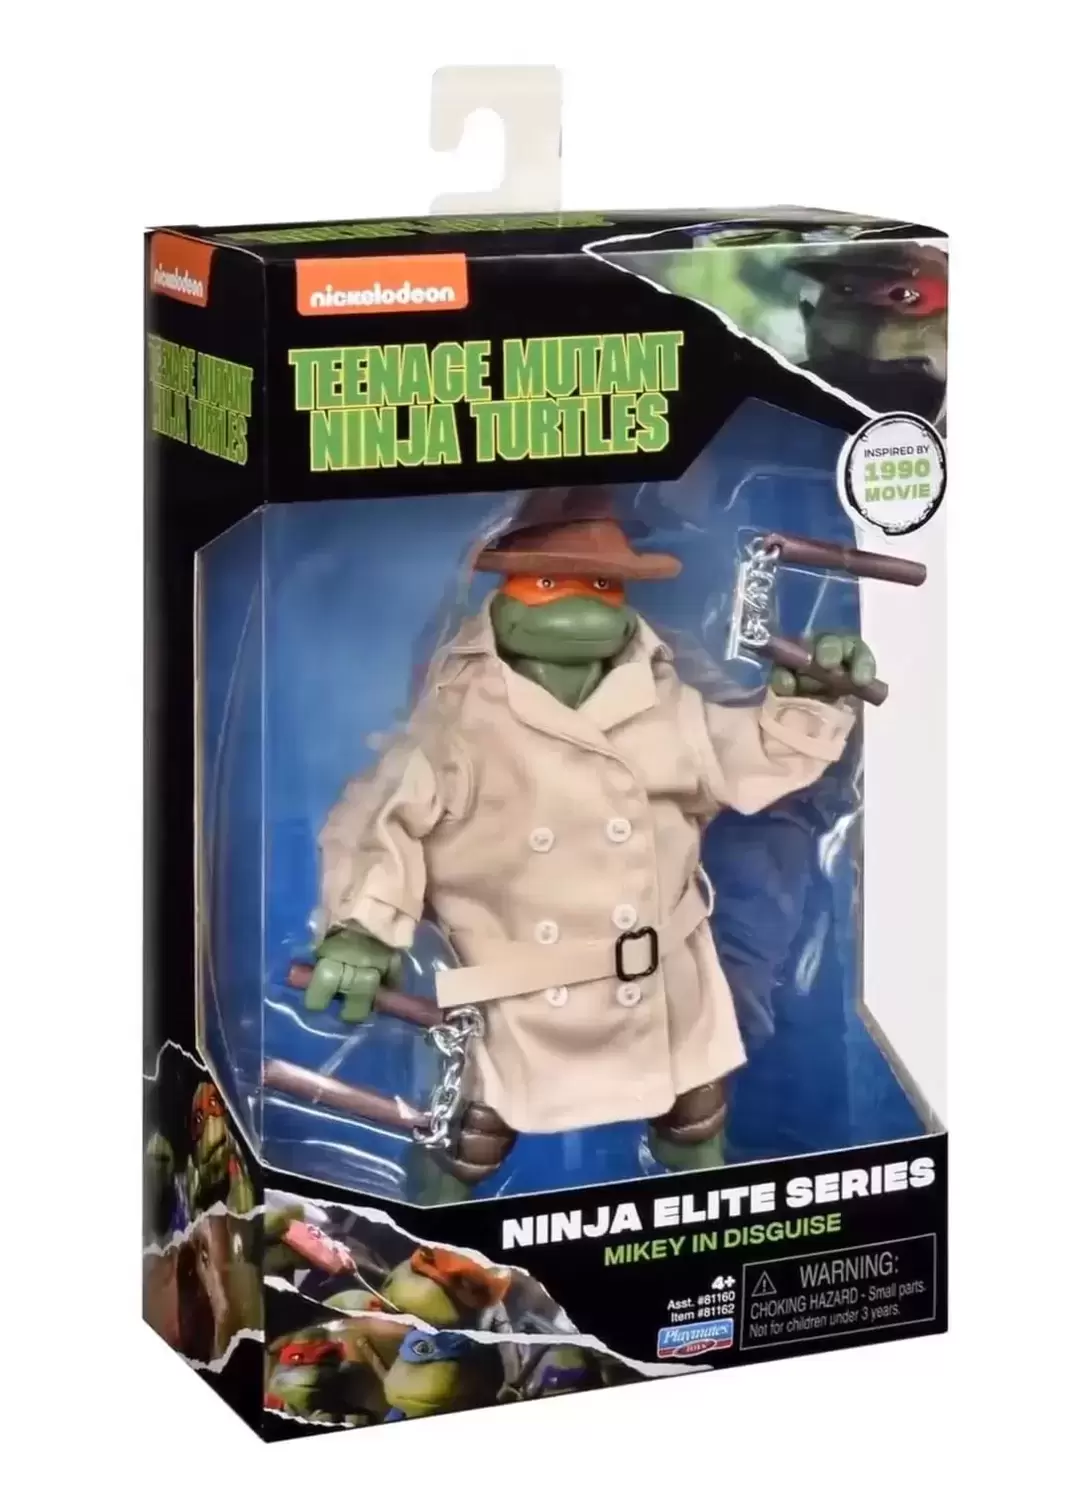 1990 Movie - Mikey in Disguise (Ninja Elite Series)